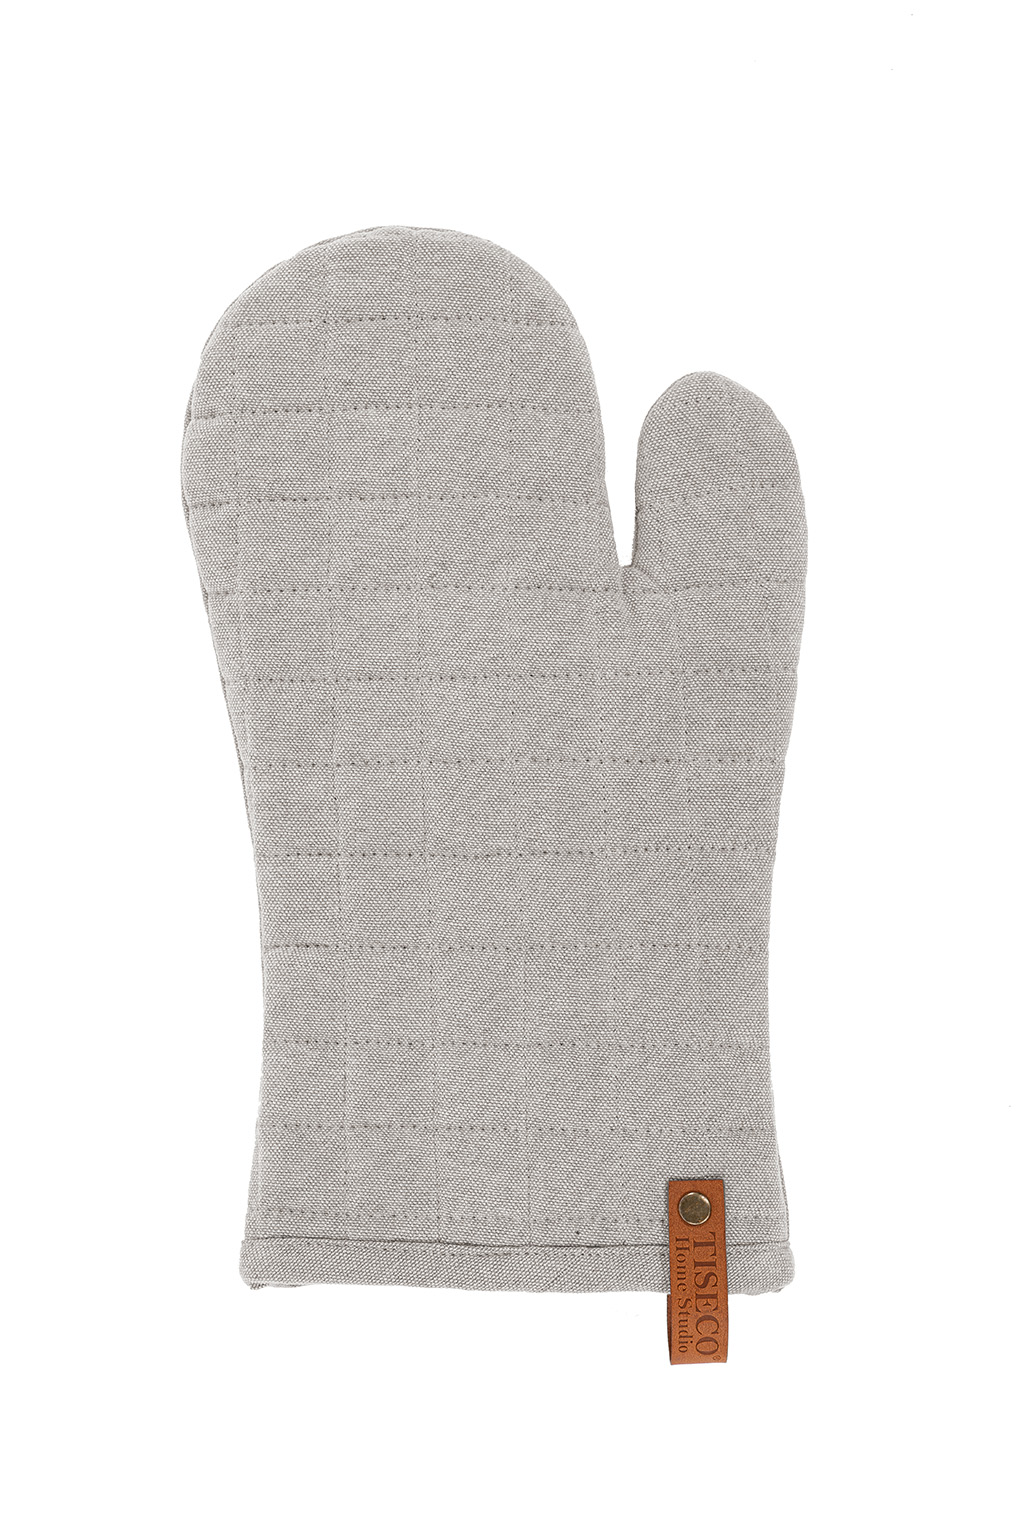 Glove HAVANA 18x32cm, light grey